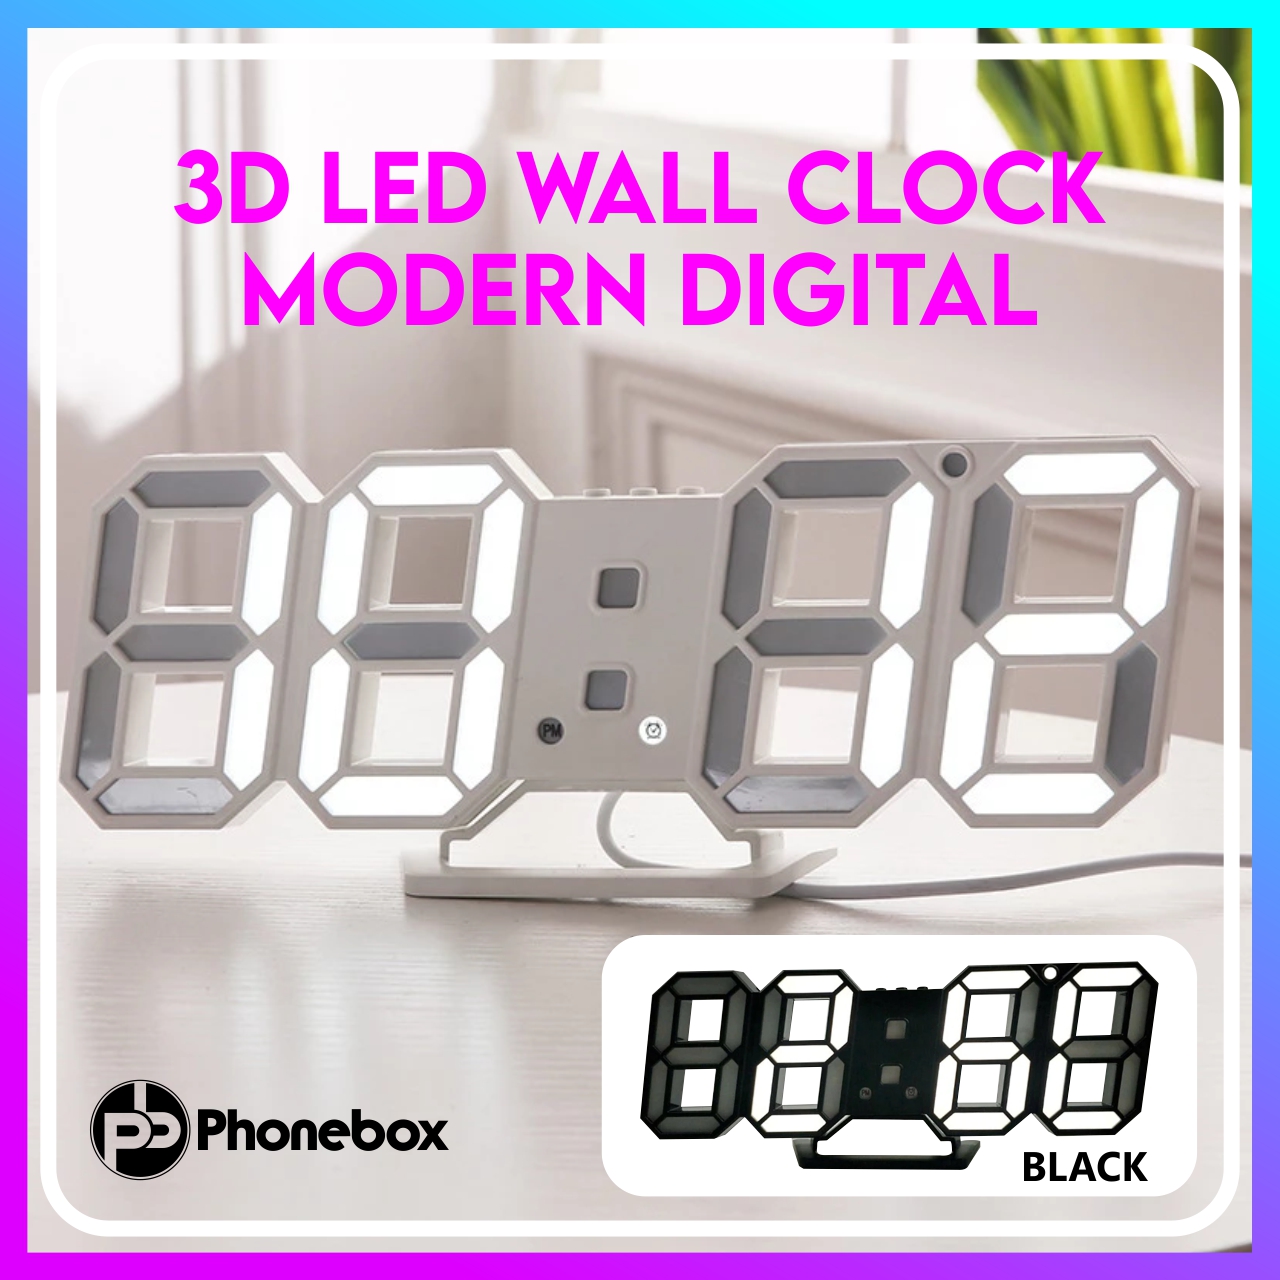 3D LED Wall Clock Modern Digital Display Home Kitchen Office Night Wall Clocks 